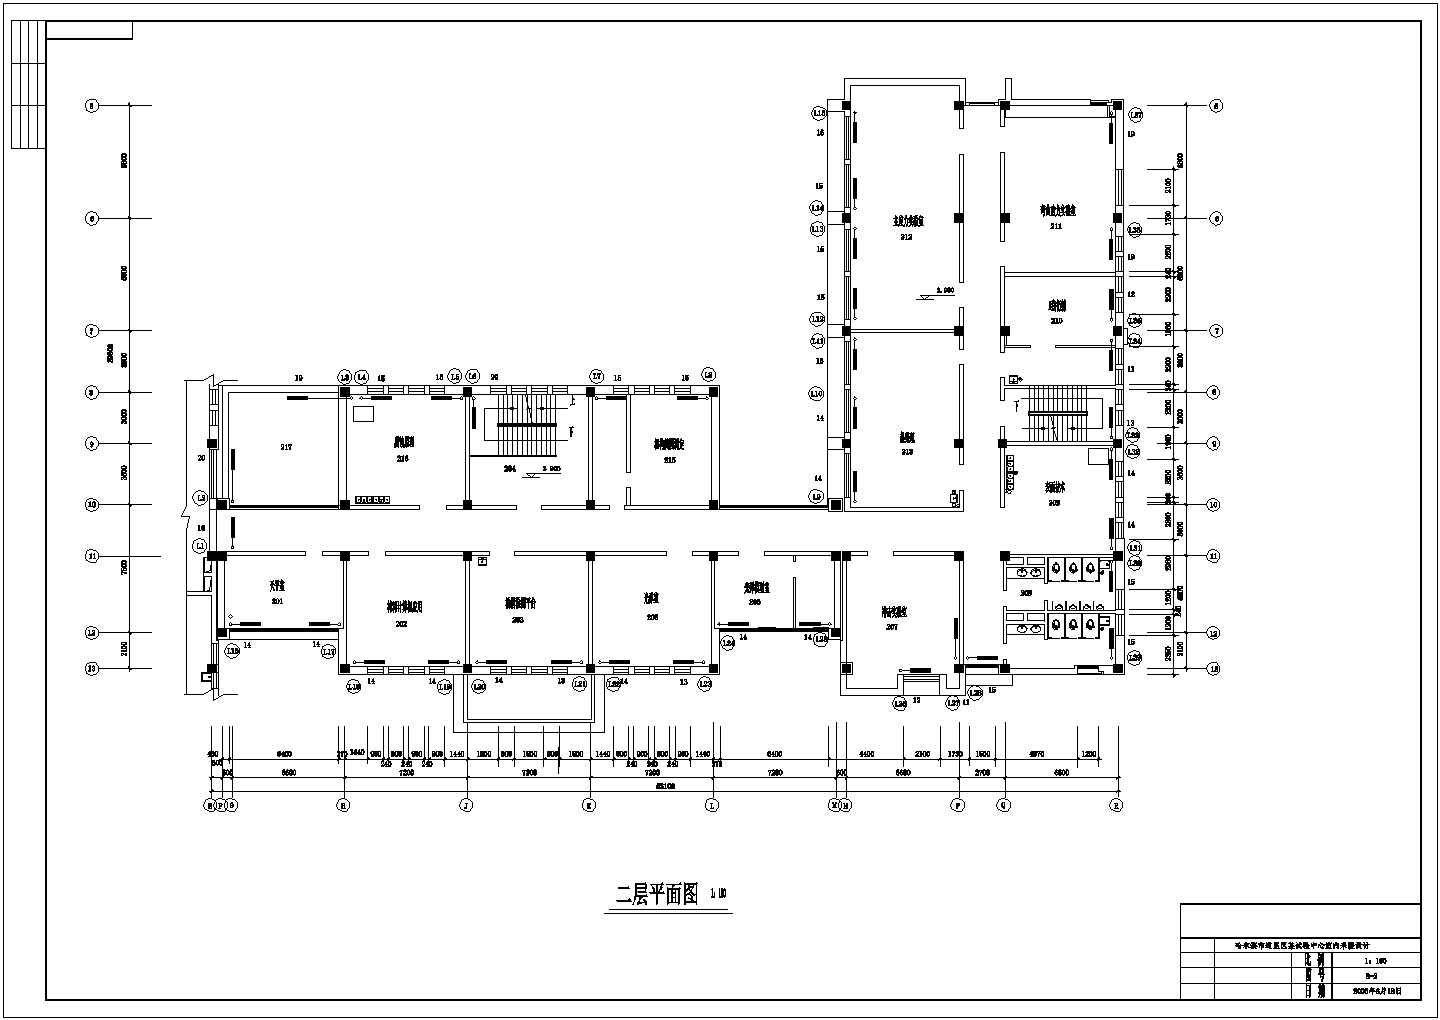 哈尔滨某建筑工程的供热工程设计图纸